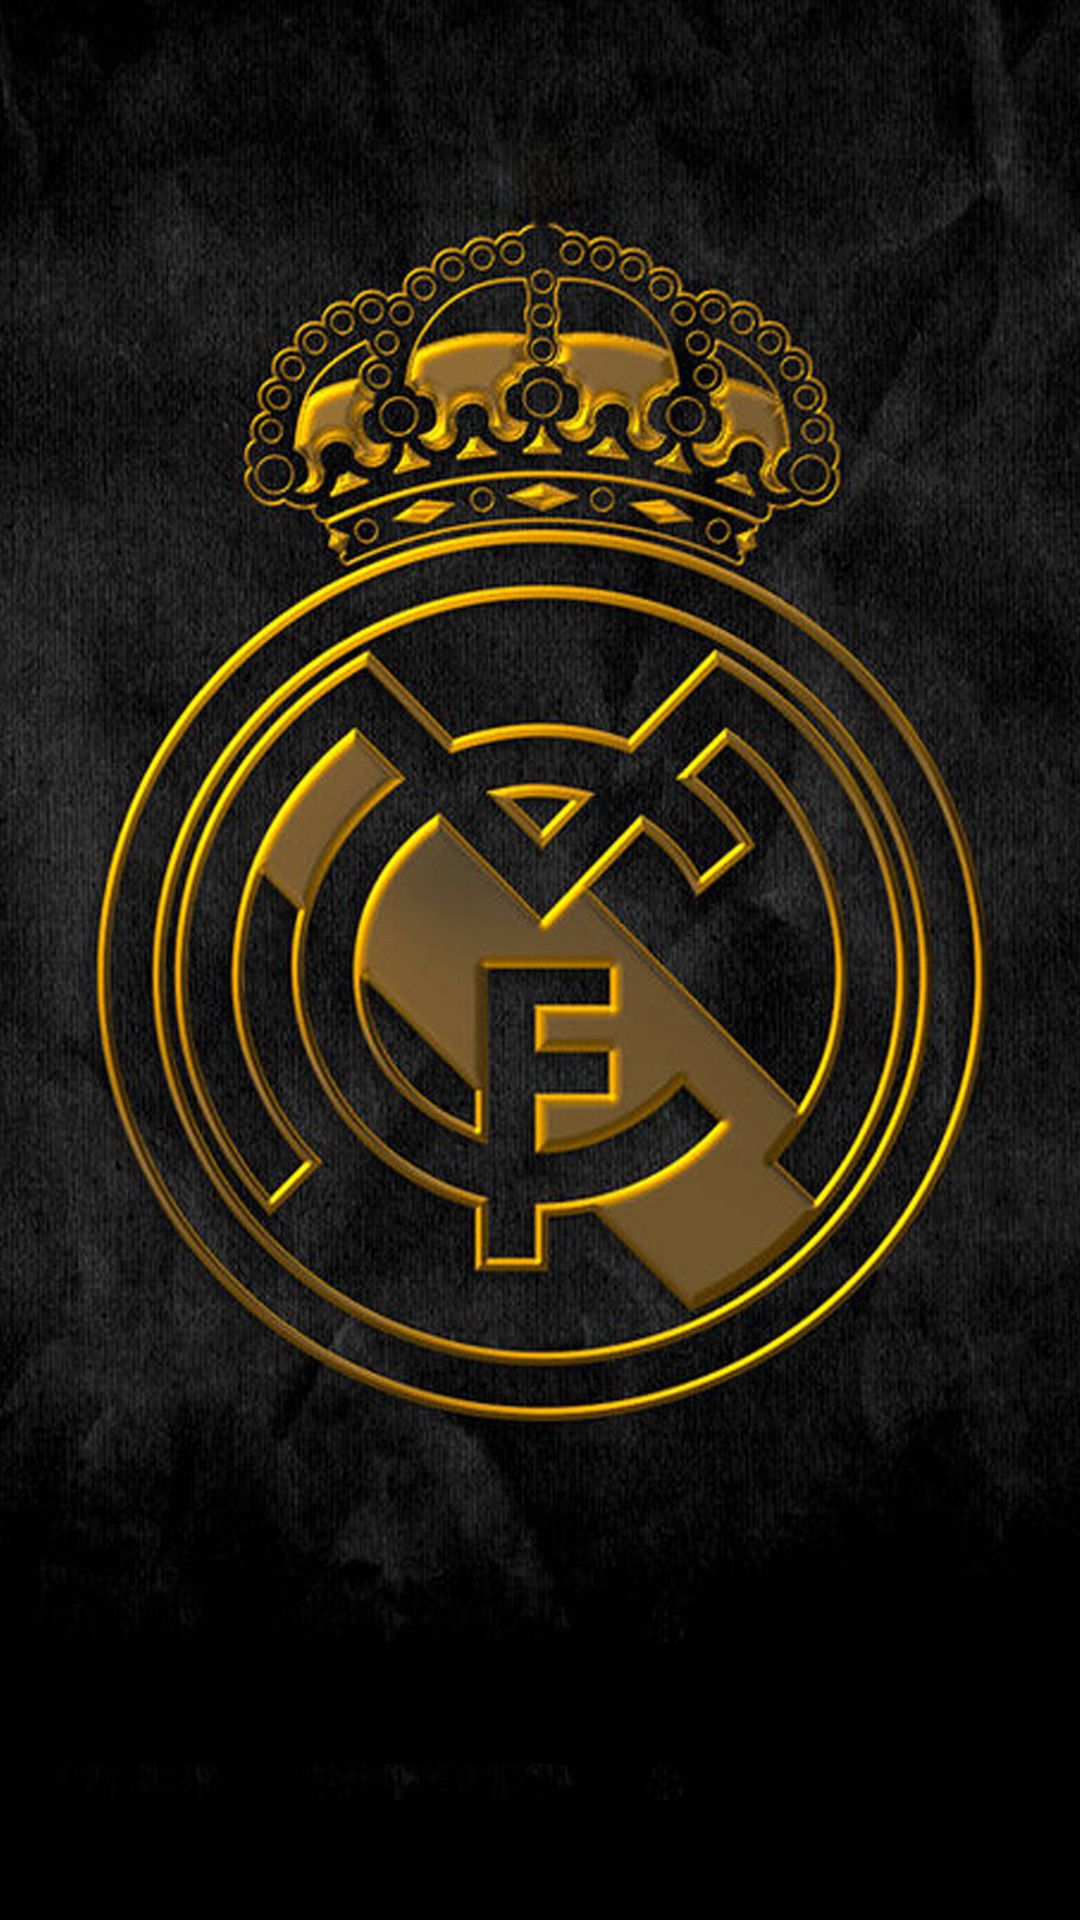 Lock Screen Real Madrid Wallpaper iPhone Football. Real madrid wallpaper, Madrid wallpaper, Real madrid logo